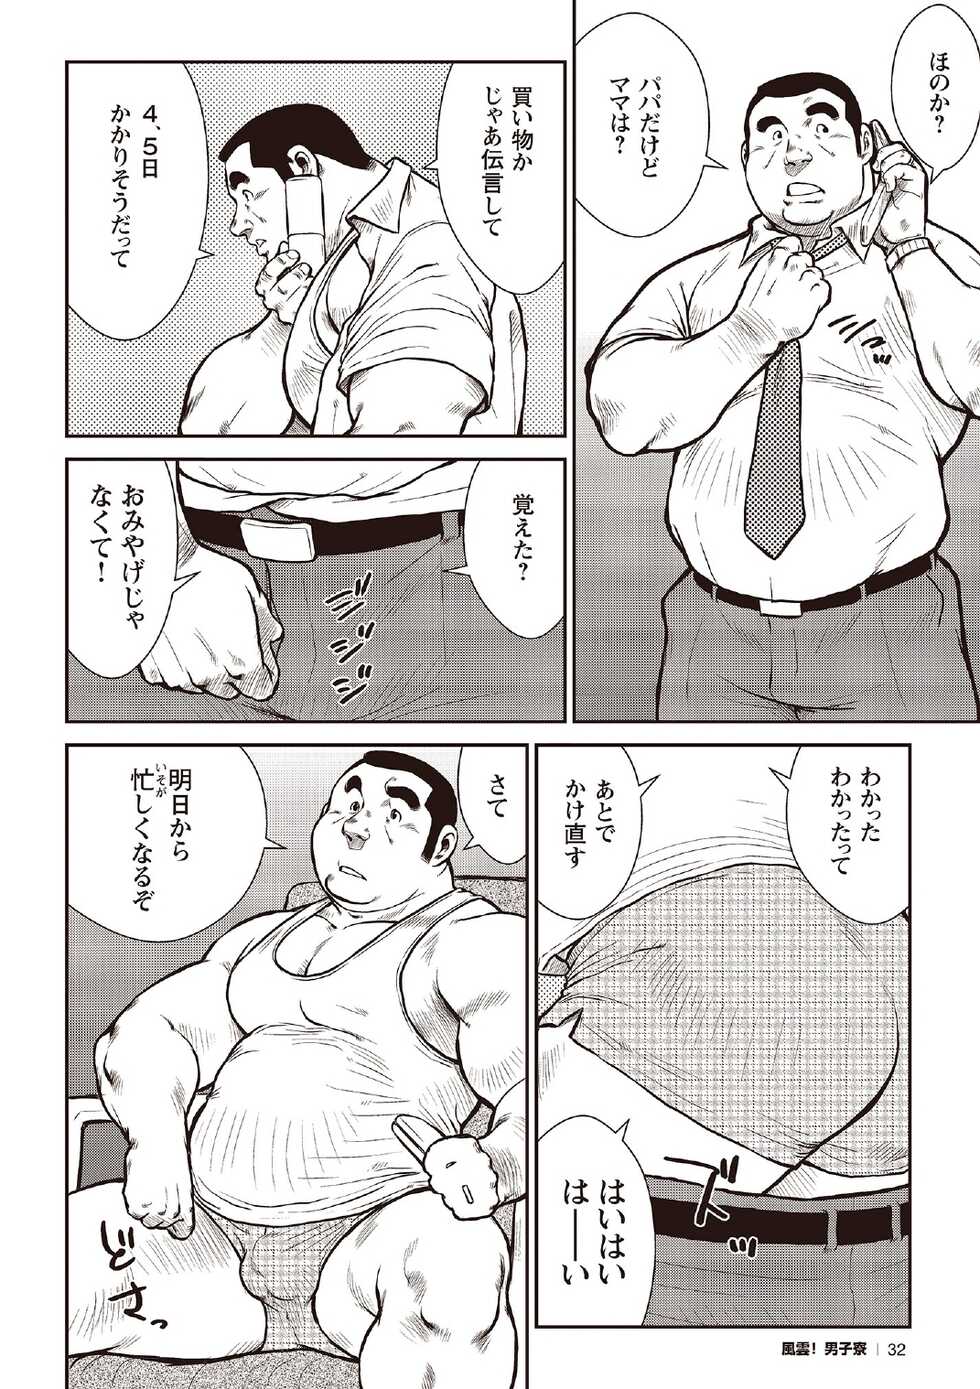 [Ebisubashi Seizou] Ebisubashi Seizou Tanpen Manga Shuu 2 Fuuun! Danshi Ryou [Bunsatsuban] PART 2 Bousou Hantou Taifuu Zensen Ch. 1 + Ch. 2 [Digital] - Page 10